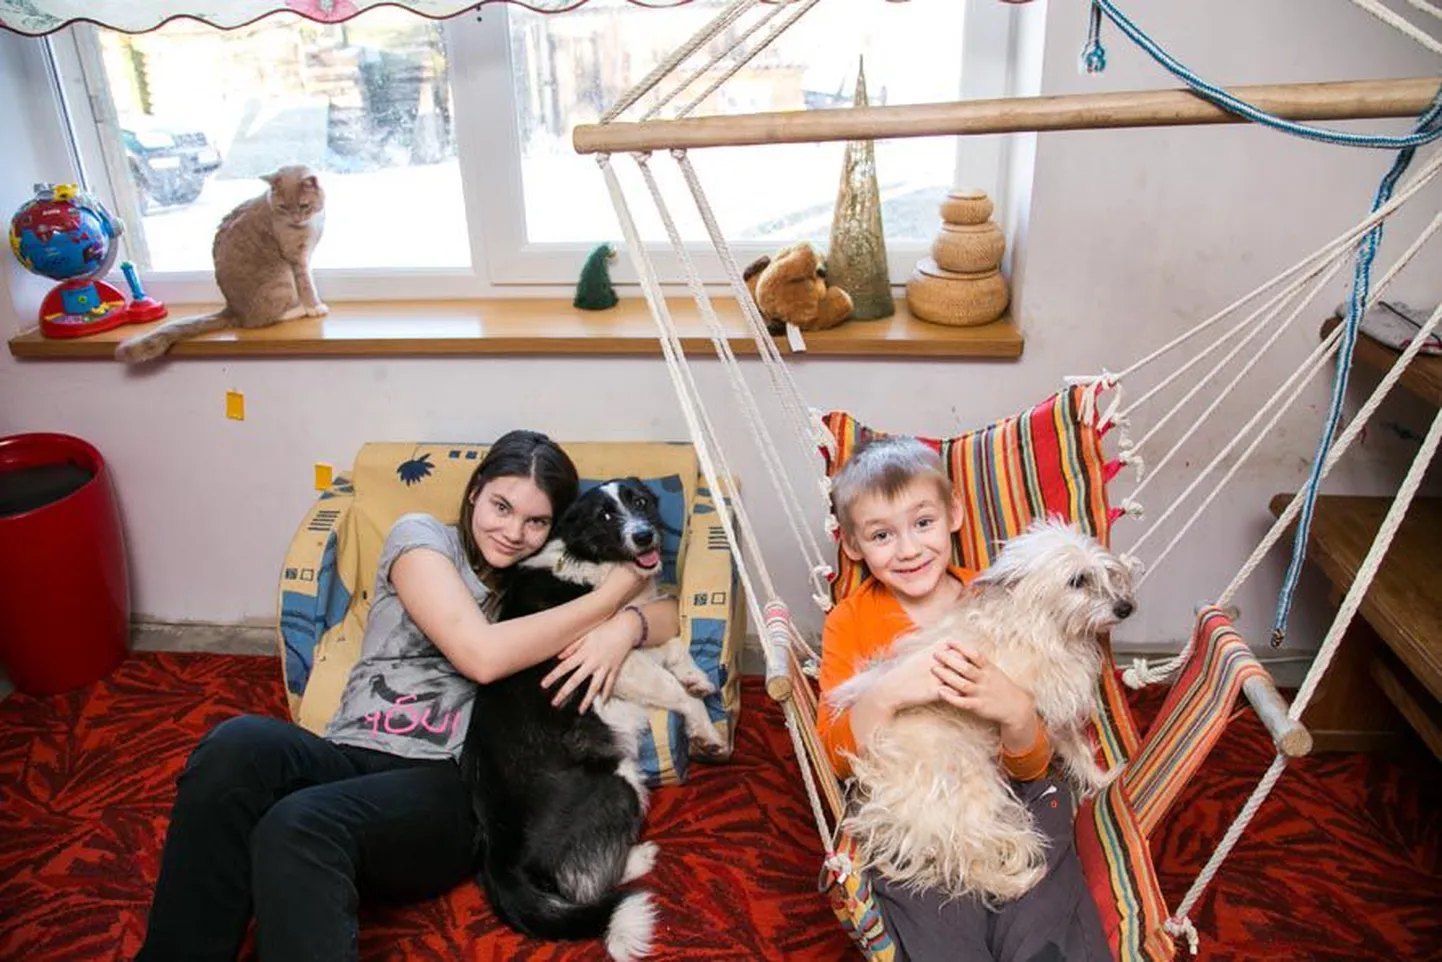 Suur sõbralik pere, kus lisaks emale-isale on kolm last, kaks kassi ja koera. Aknalaual istub kass Hoskan, Mari-Helen hoiab süles Põrra-Põrrat, Uku-Bert Pentut, pildilt on puudu peretütar Anni-Lii ja kass Koma.